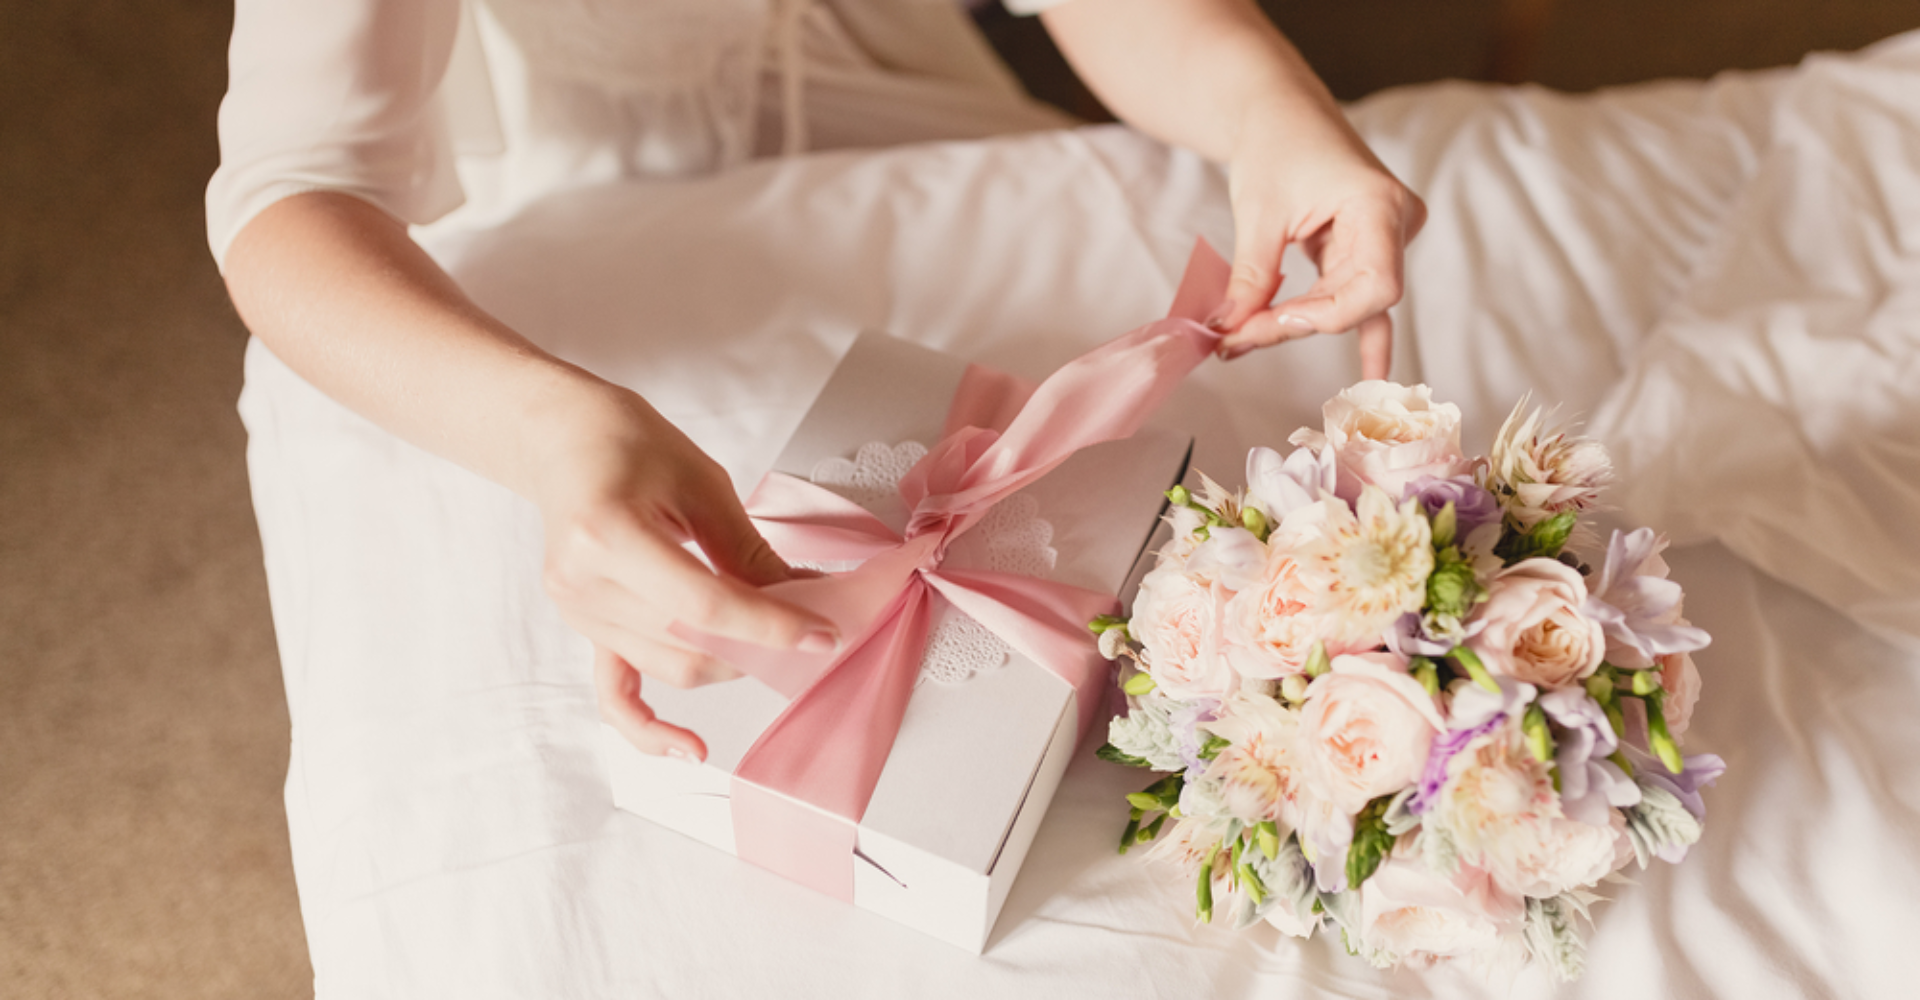 Можно ли дарить 4 цветов. Подарок на свадьбу молодоженам. Что нельзя дарить на свадьб. Постельное белье на свадьбу молодоженам. Какие цветы нельзя дарить на свадьбу молодоженам.